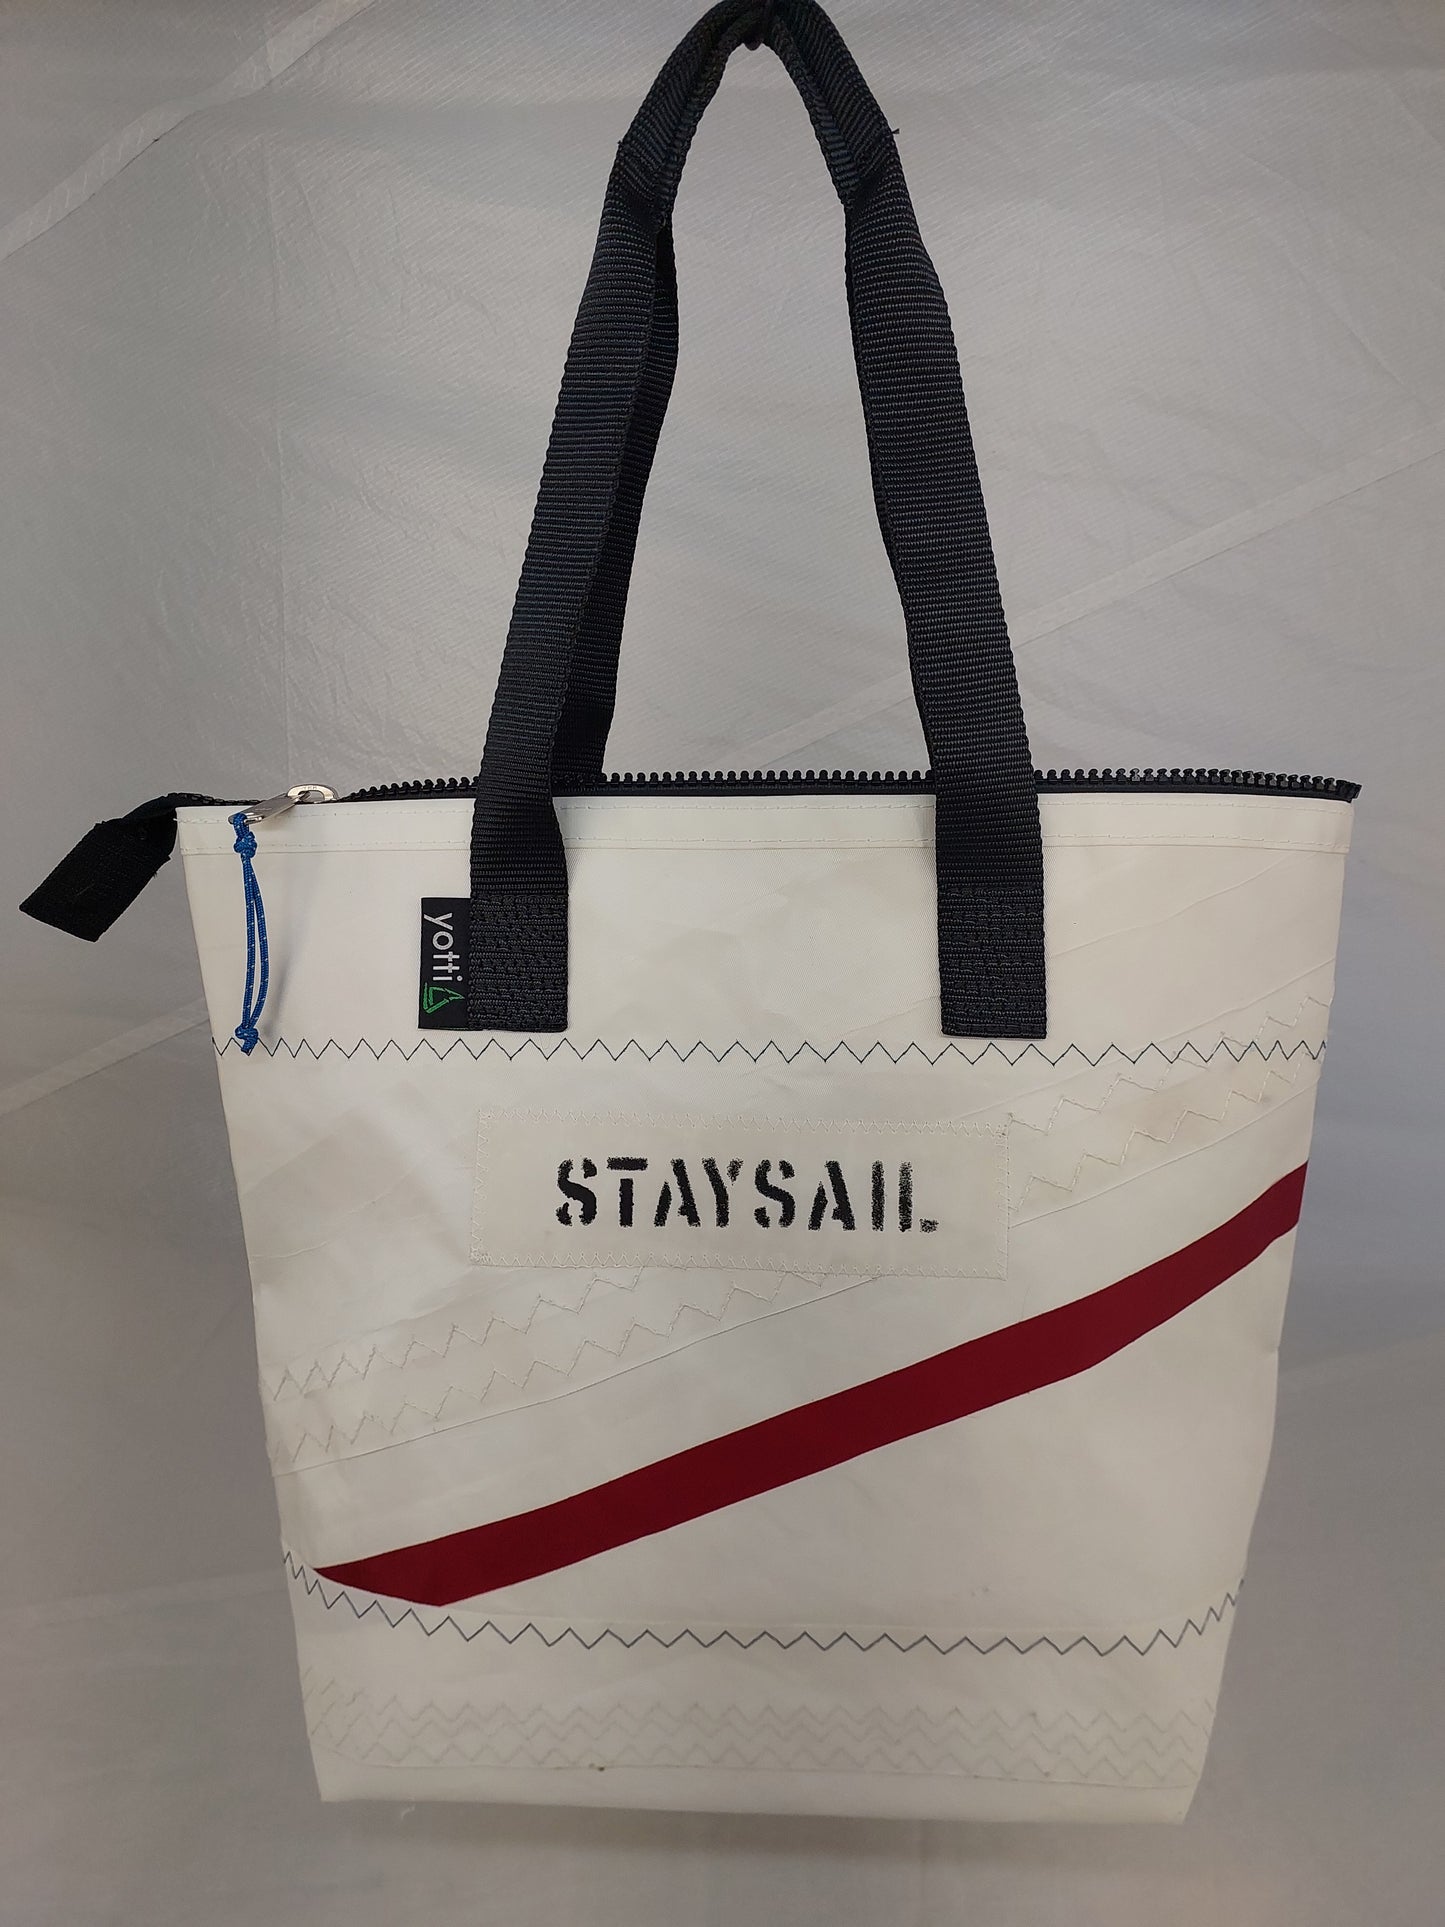 Staysail Zip Tote 802